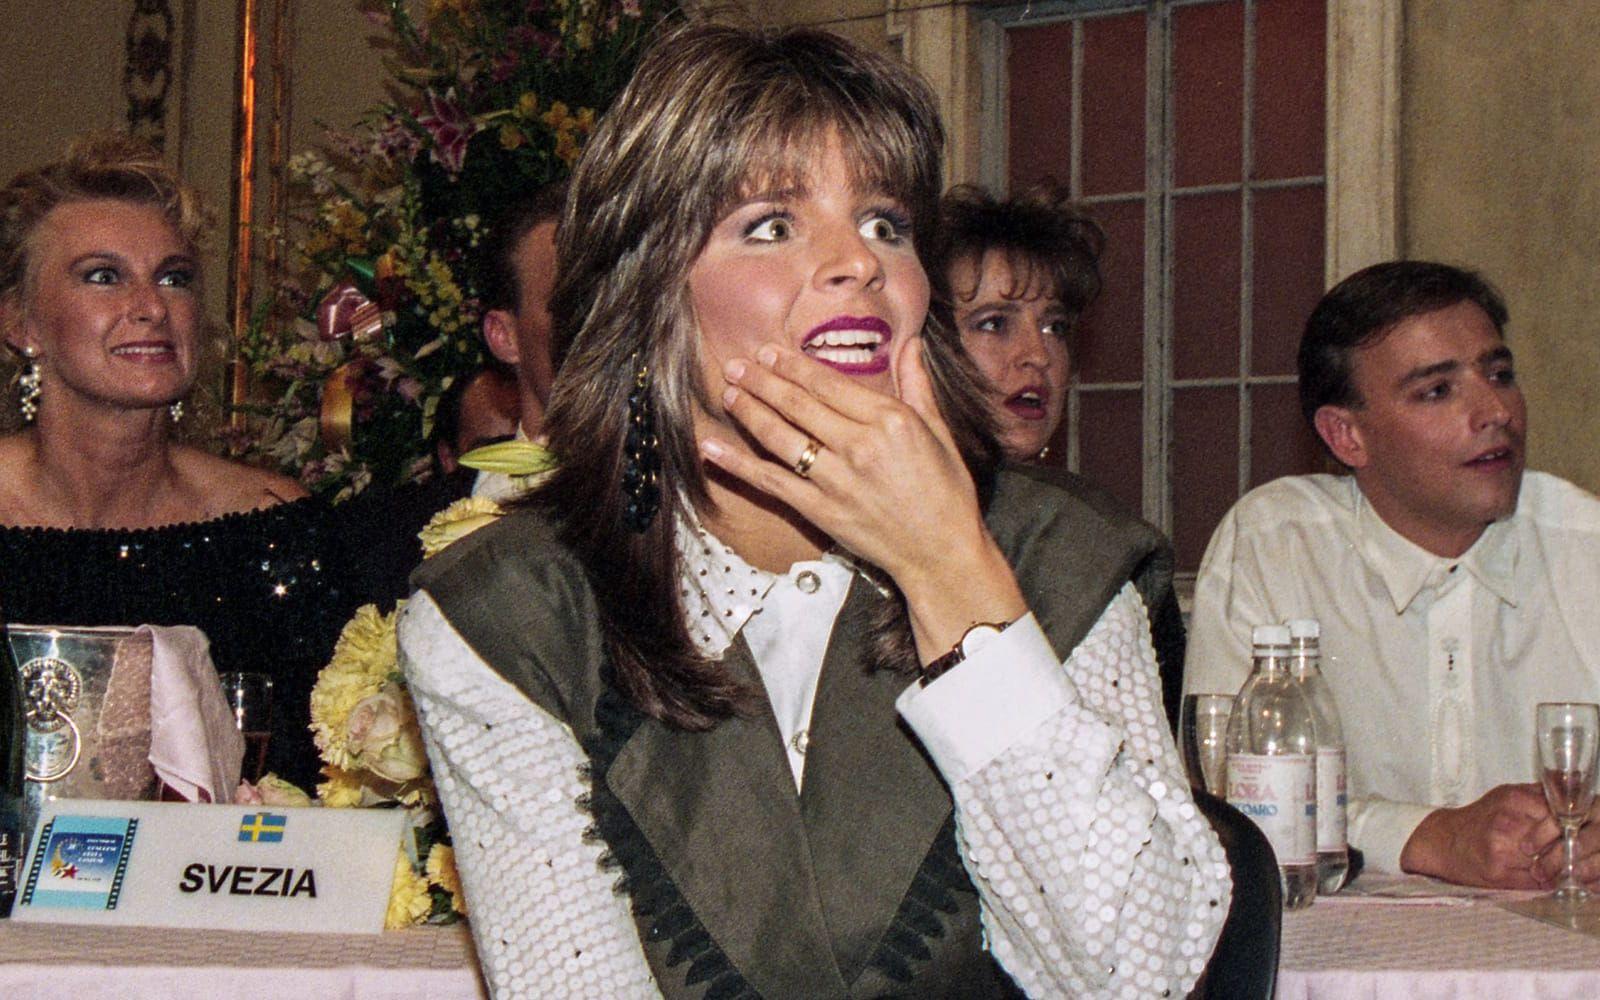 Carolas ansiktssuttryck säger allt om den rafflande omröstningen i Eurovision Song Contest i Rom 1991. Produktionen präglades av förvirring och röstkontrollanter fick flera gånger rycka in för att korrigera poänggivningen. Foto: TT